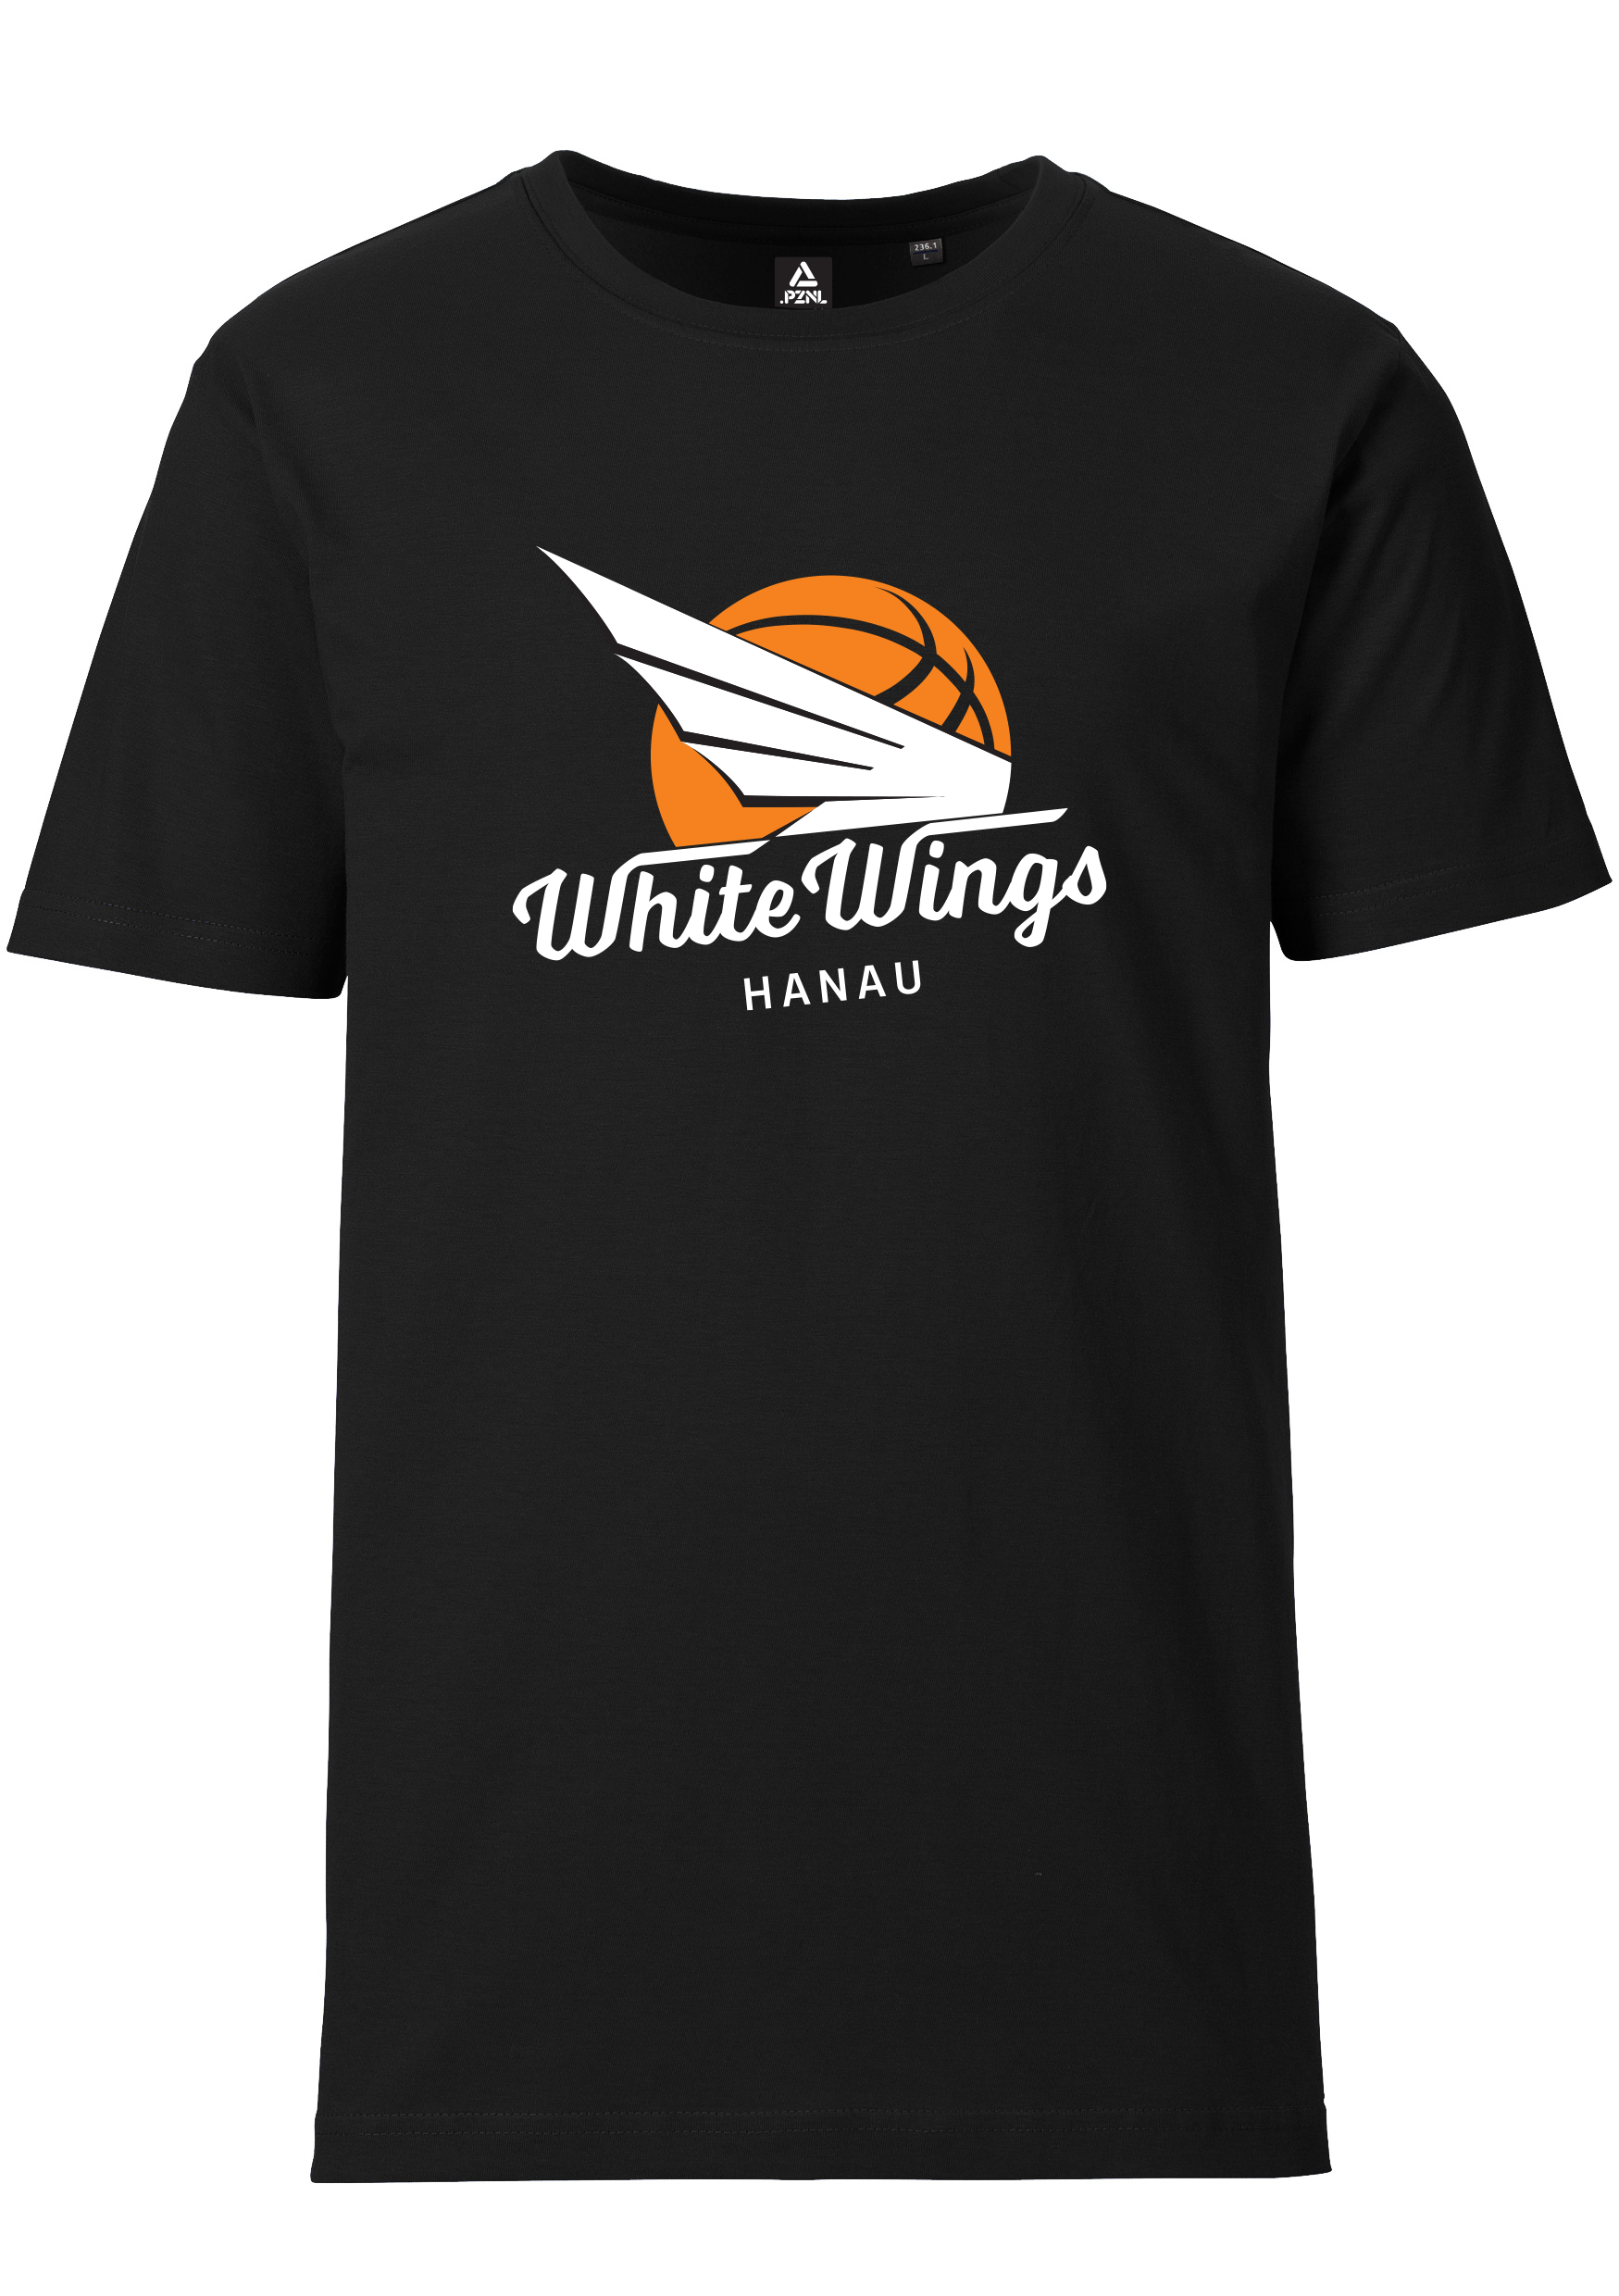 White Wings T Shirt großes Logo